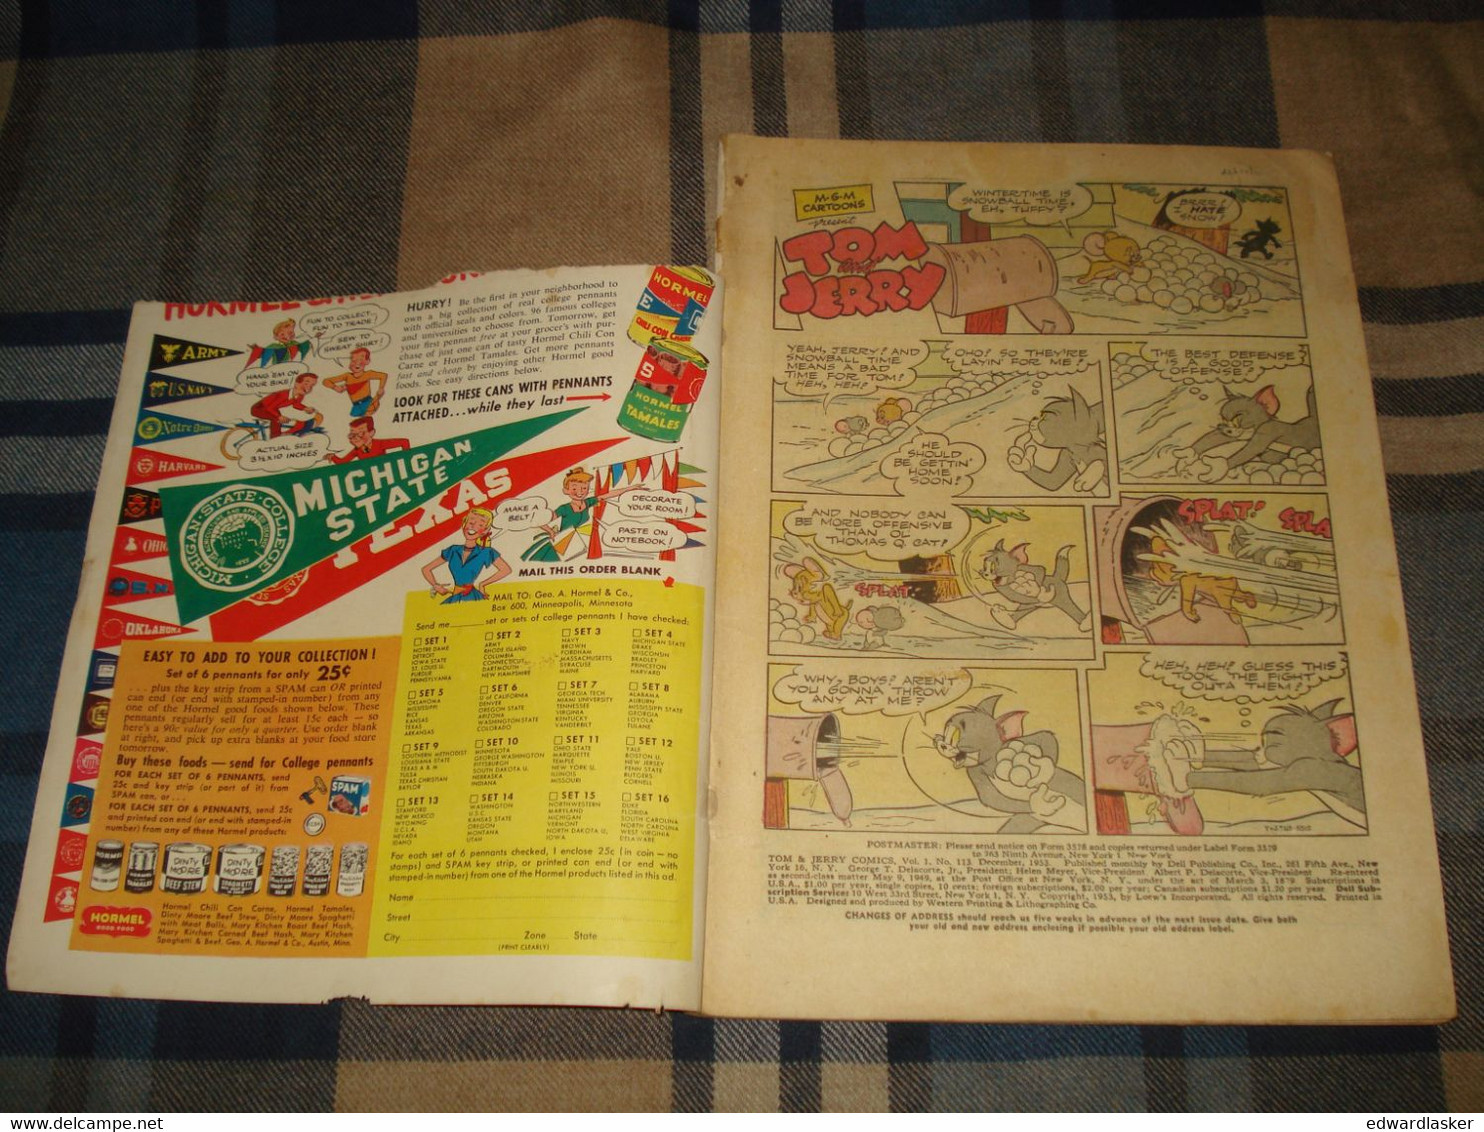 TOM AND JERRY COMICS N°113 (comics VO) - Décembre 1953 - Dell - état Médiocre - Other Publishers